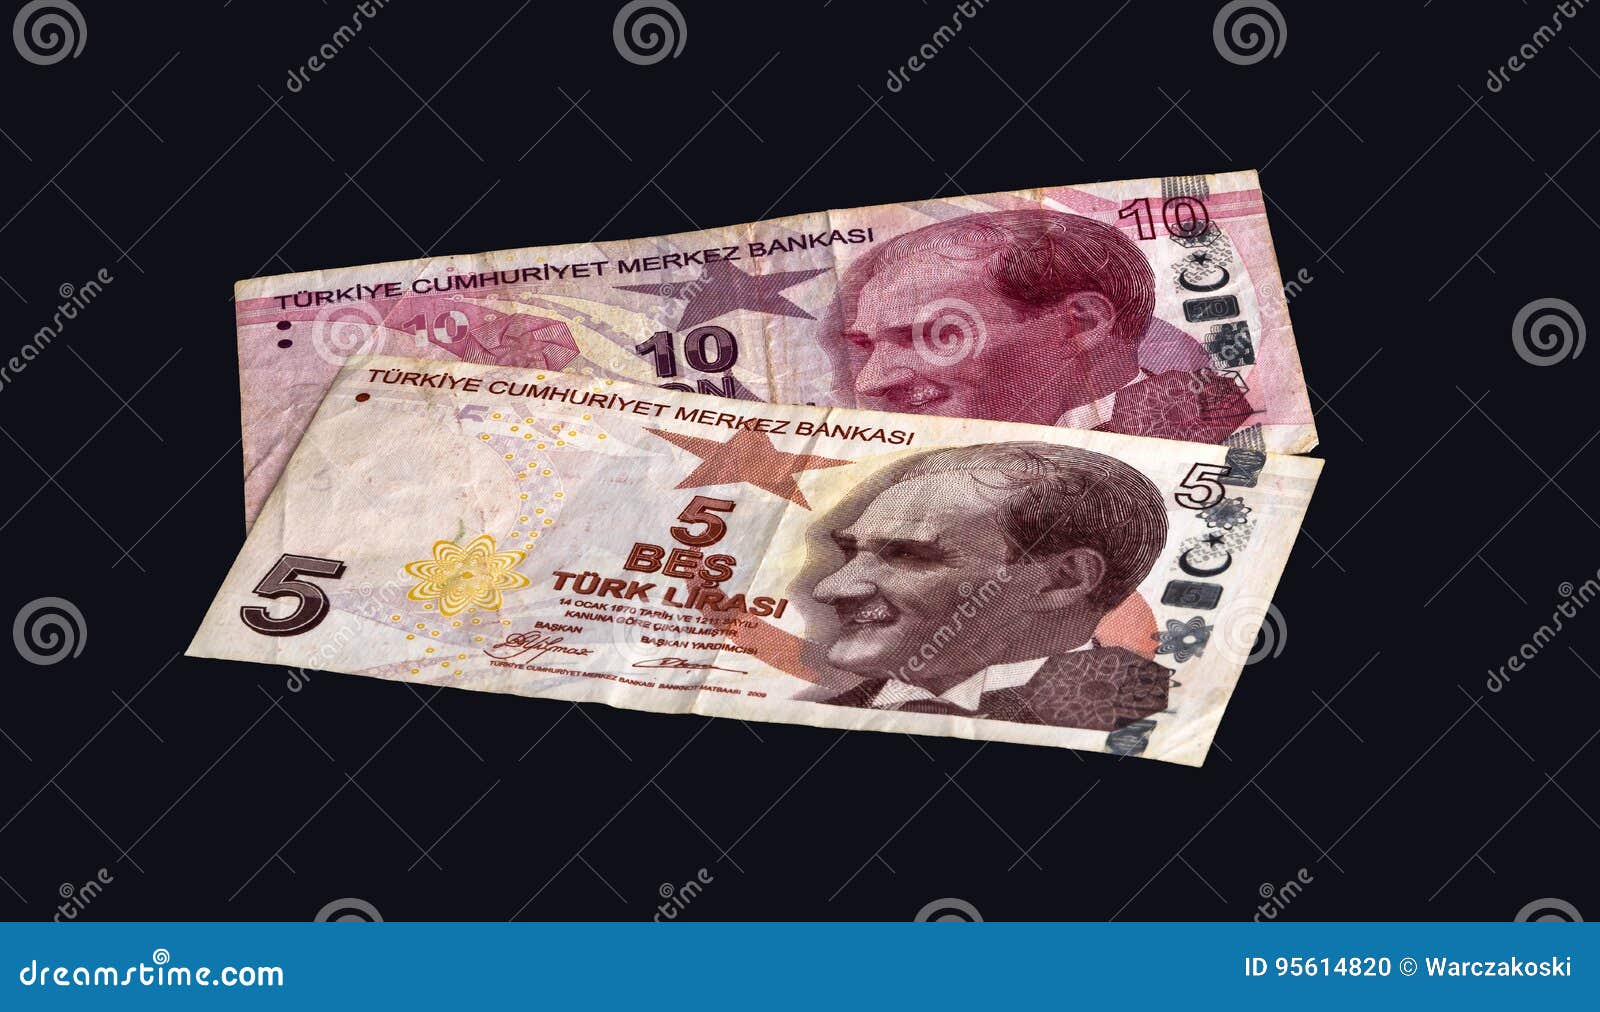 1 доллар в турции на сегодня. Наличные Турции и доллар. Бумажная валюта в Турции.